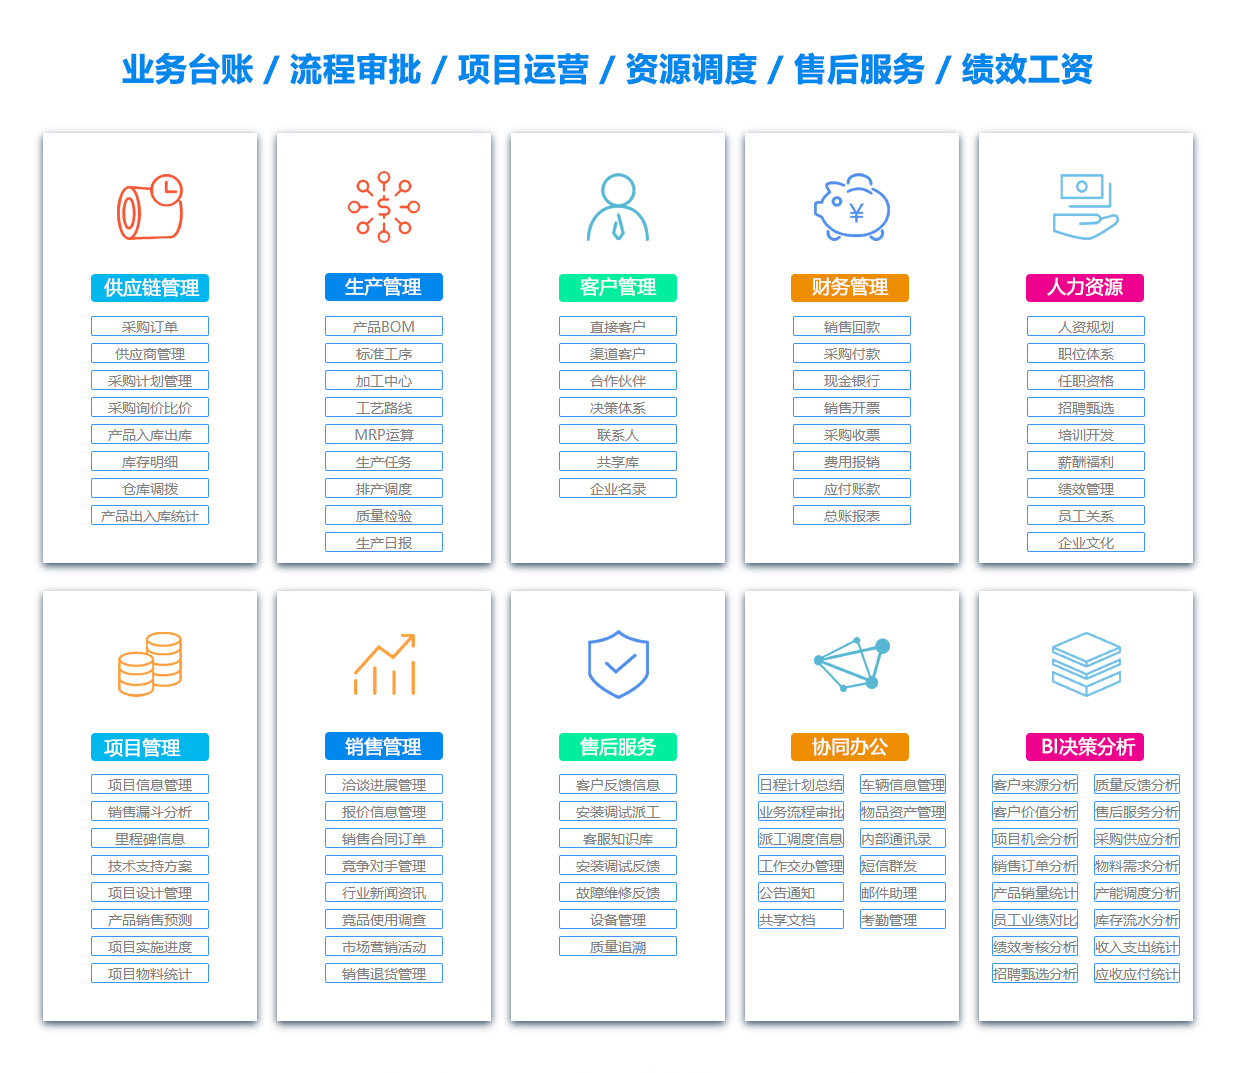 北京客户资料管理系统